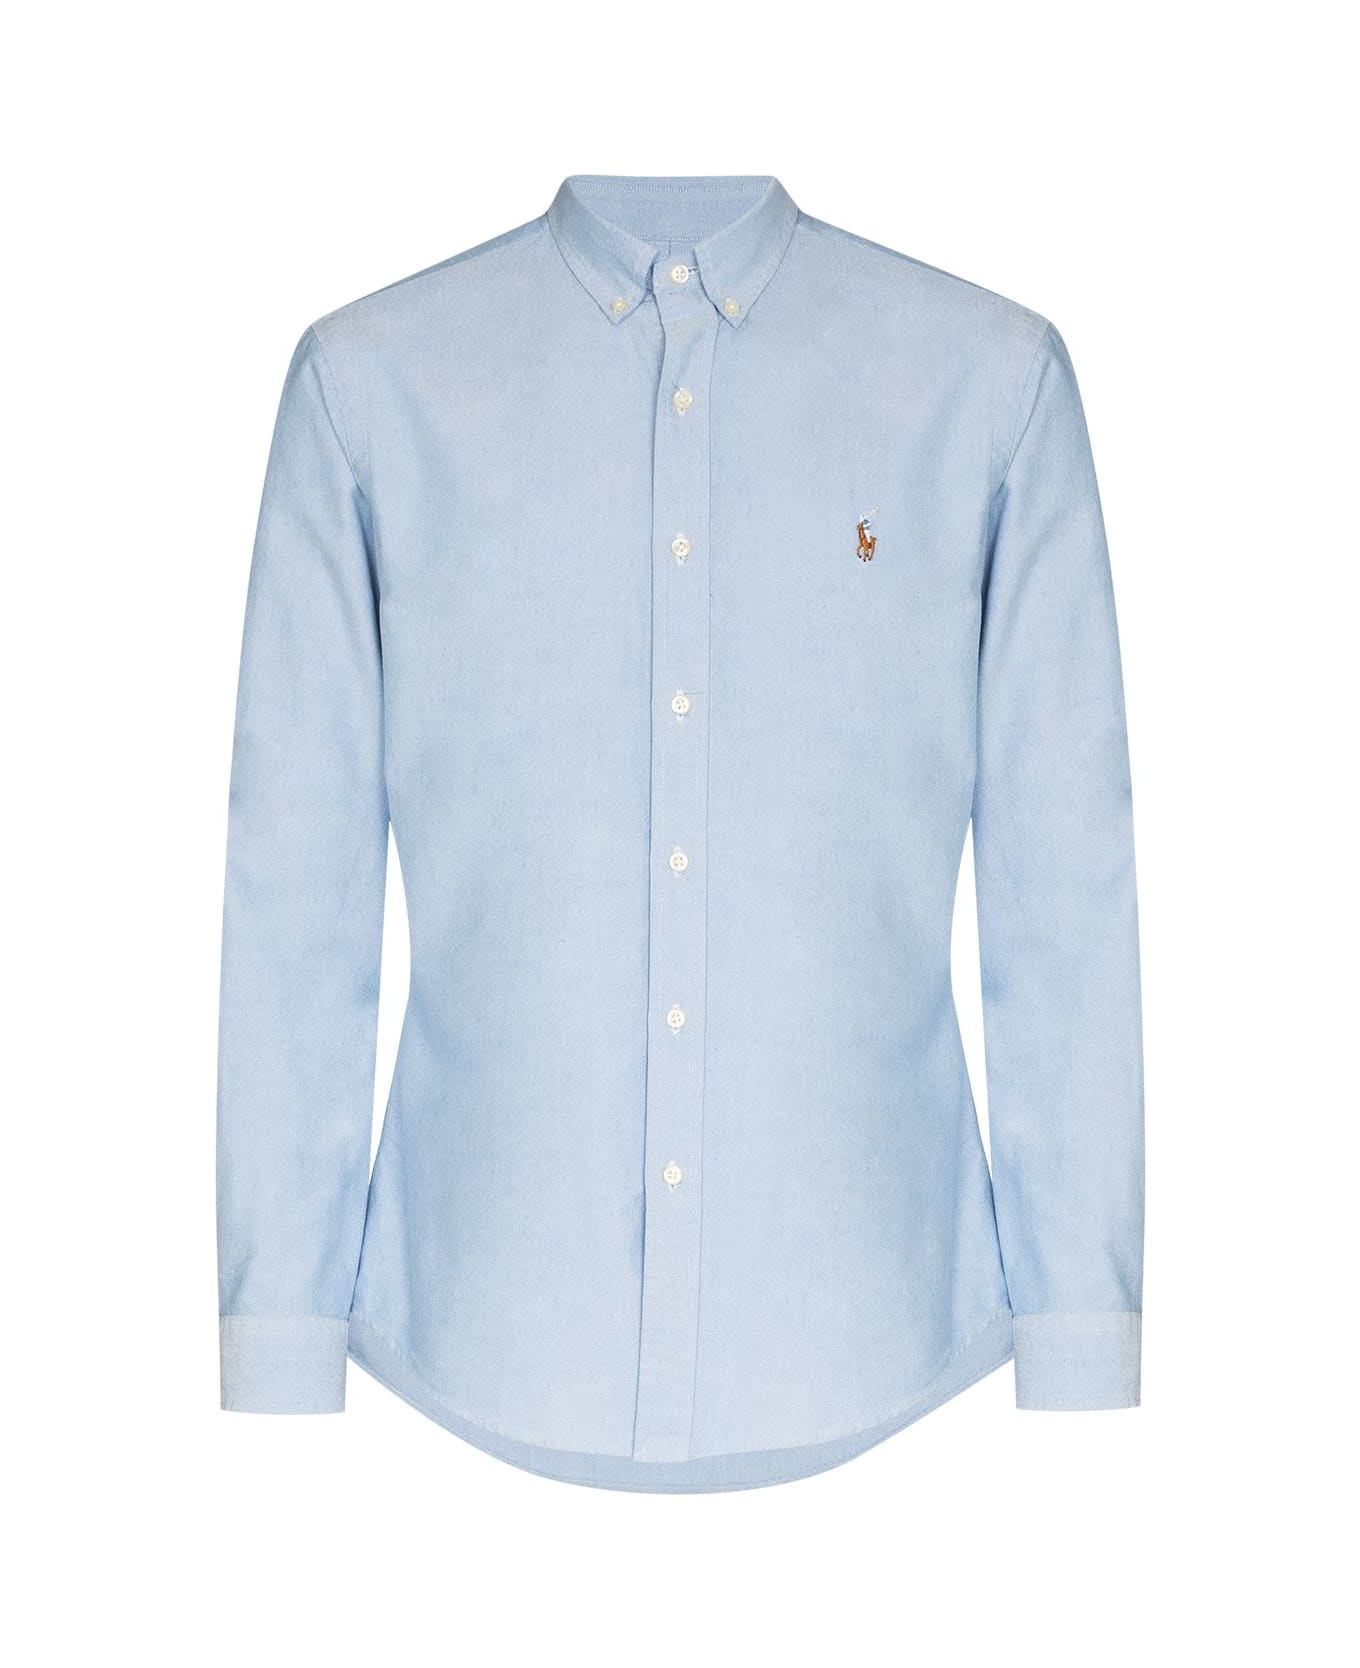 Polo Ralph Lauren Classic Oxford Long Sleeve Sport Shirt - Bsr Blue